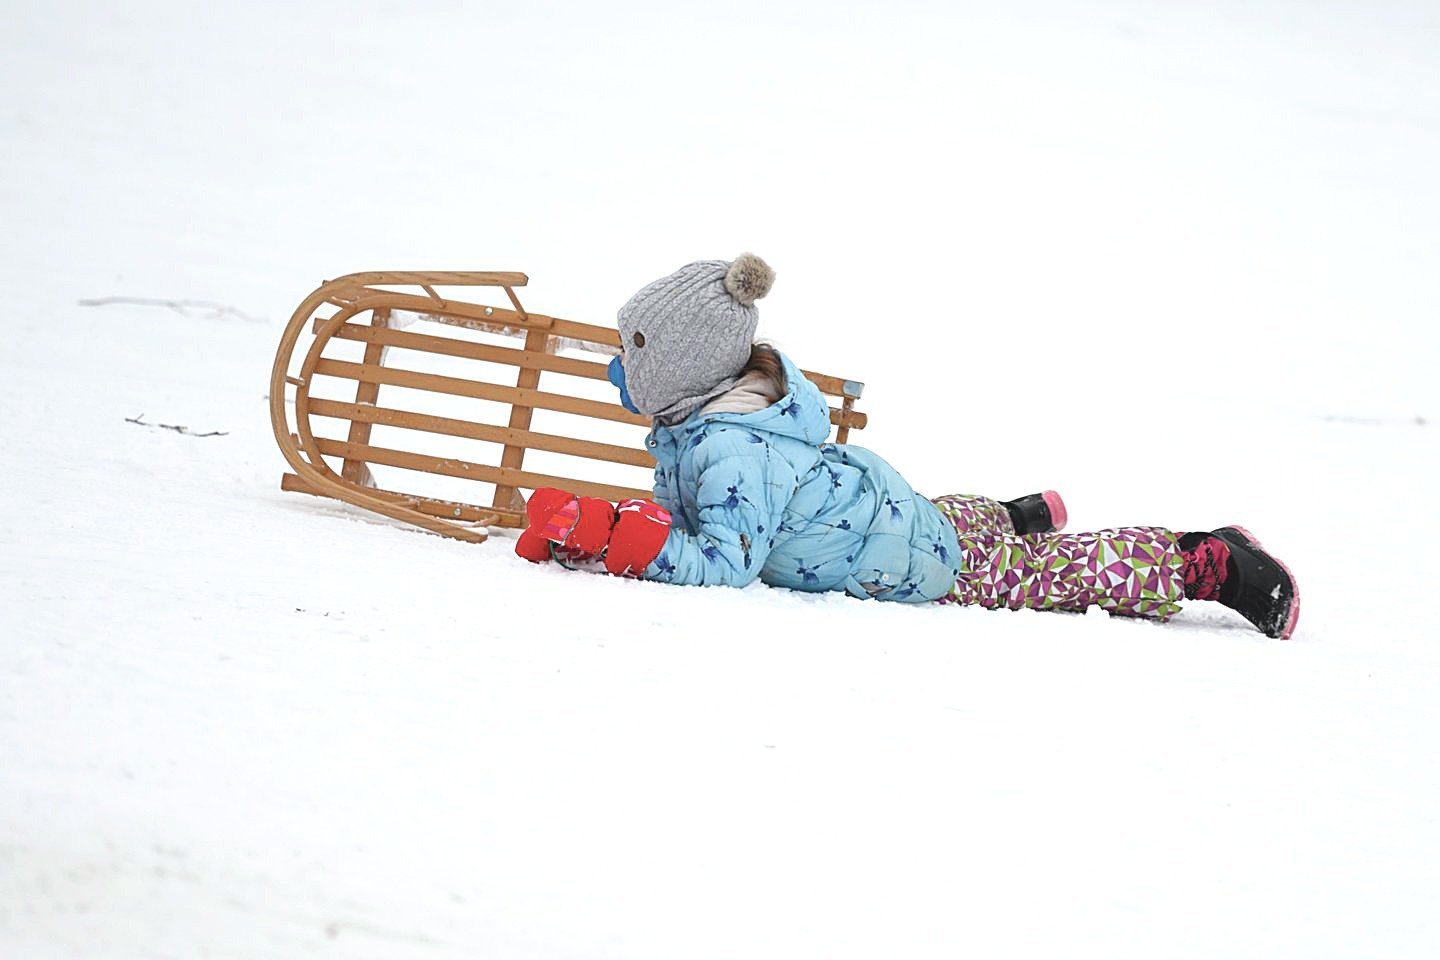 Tinkamo rogučių modelio pasirinkimas leis mėgautis sniego pramogomis ne tik vaikams, bet ir tėvams, kurie bus tikri dėl savo atžalų saugumo ir patogumo.<br>V.Skaraičio nuotr.